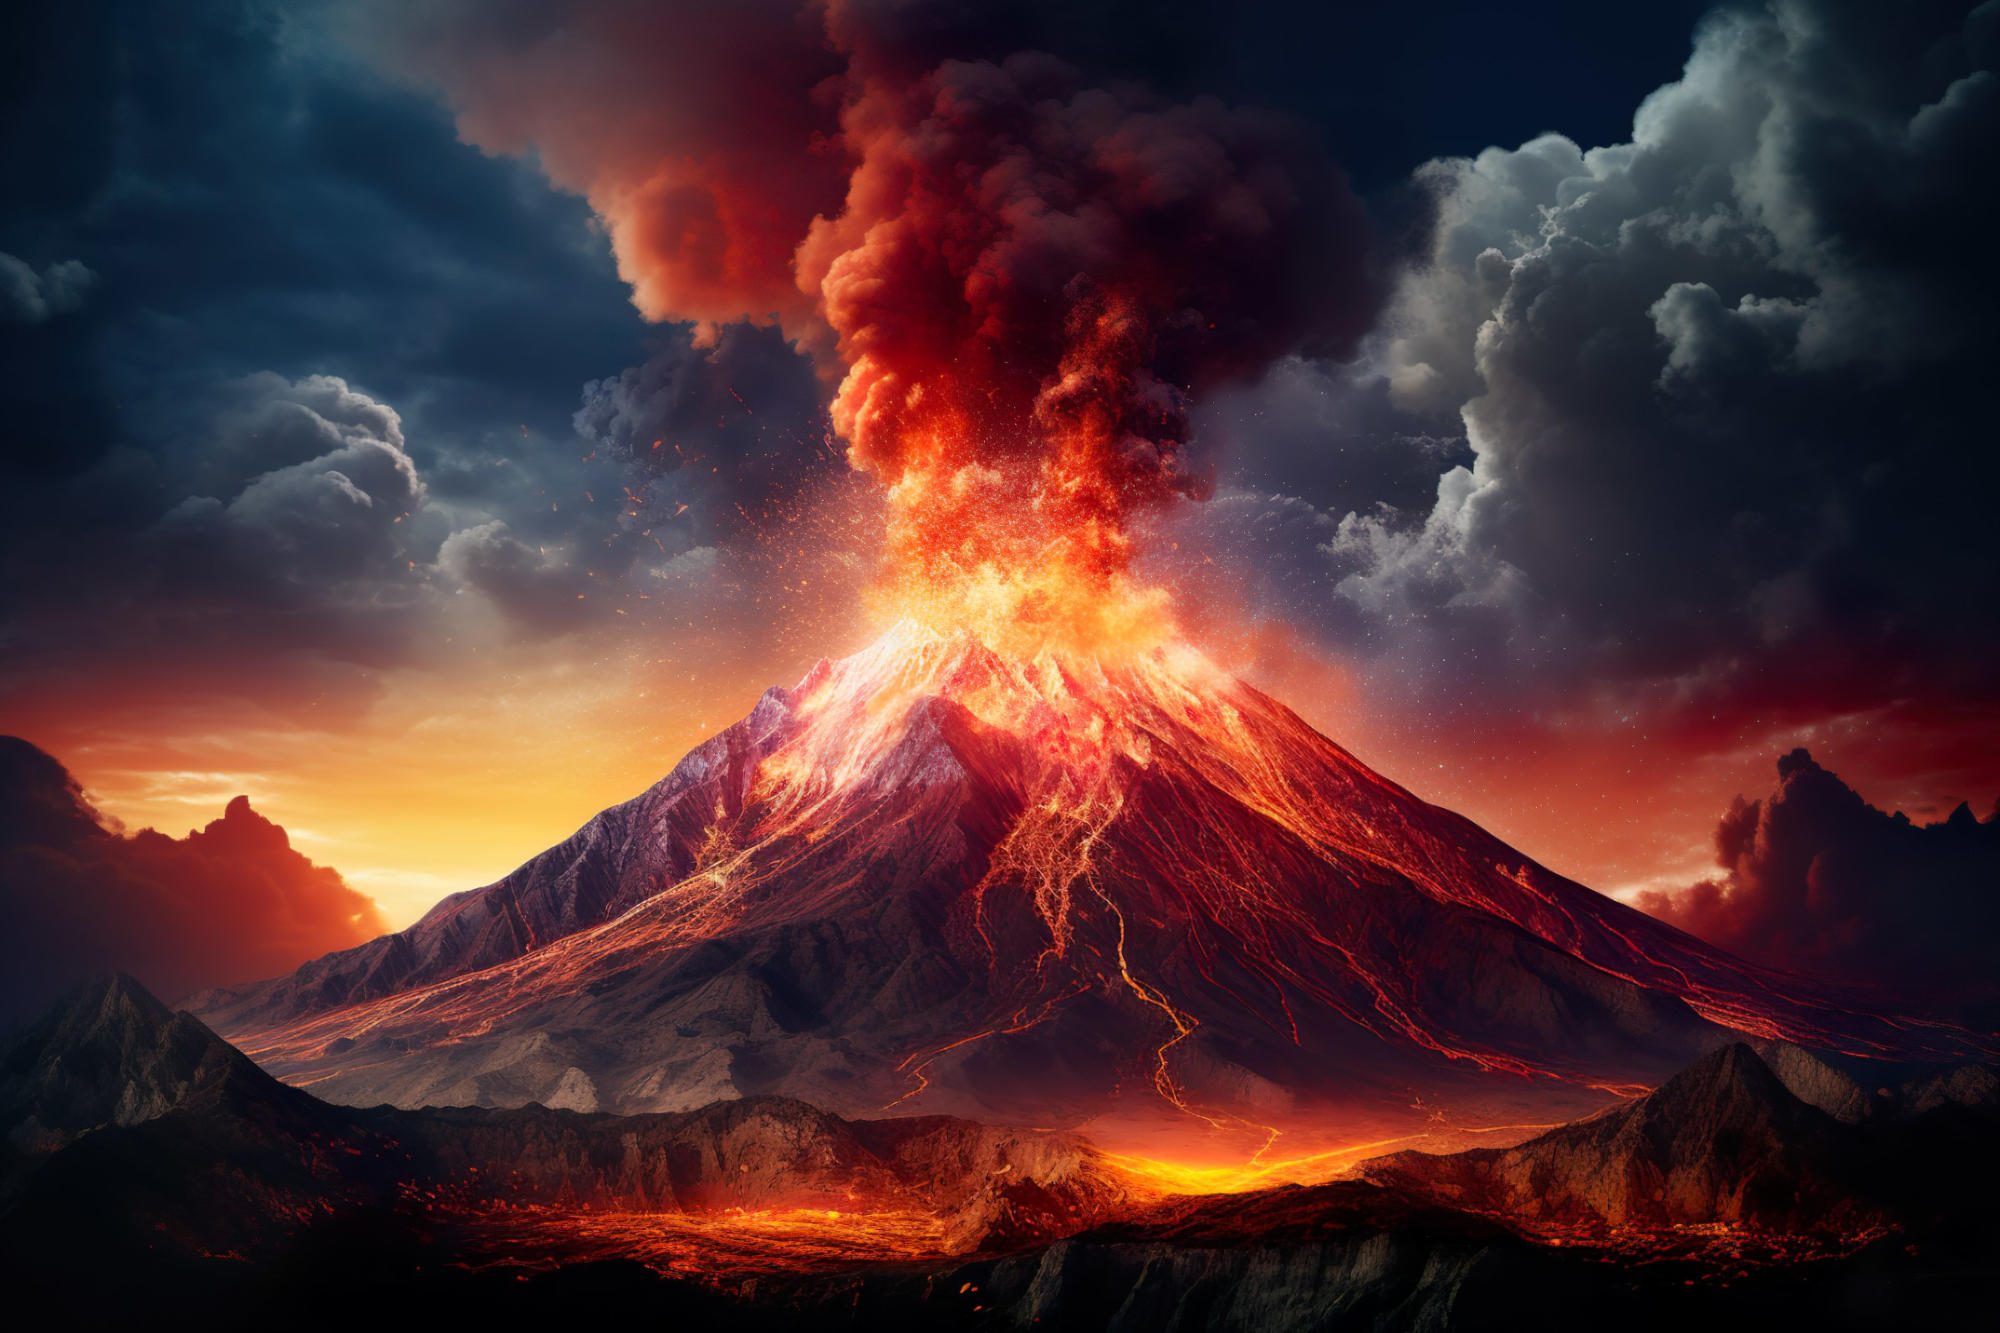 اكتشف العلماء ثورانًا بركانيًا قياسيًا قبل 7300 عام.